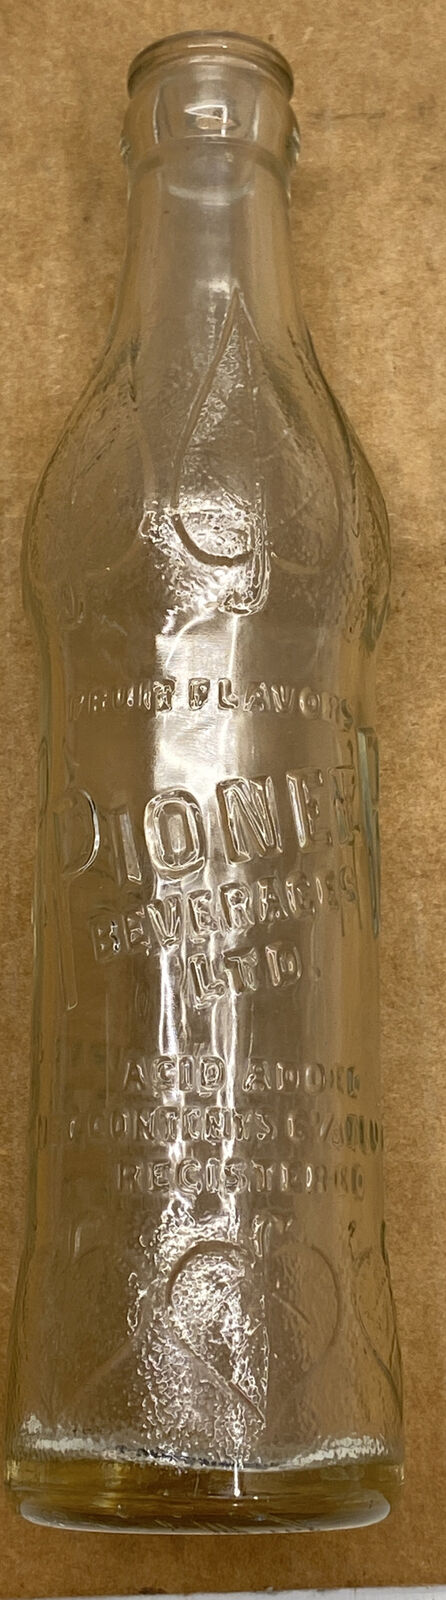 Vintage PIONEER BEVERAGES LTD. Bottle Oakland , Ca.